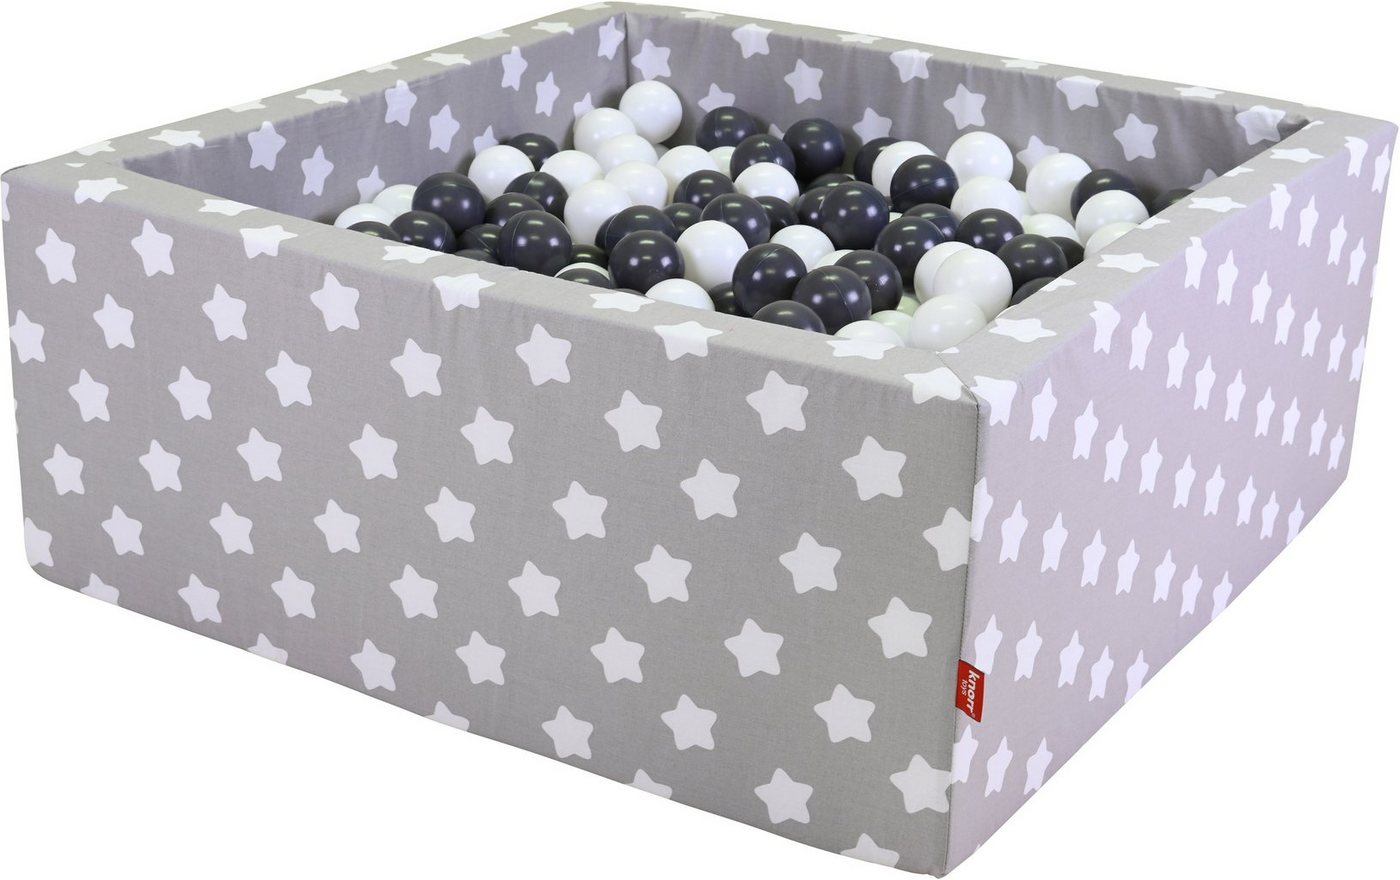 Knorrtoys® Bällebad Soft, Grey White Stars, eckig mit 100 Bällen Grey/creme, Made in Europe von Knorrtoys®